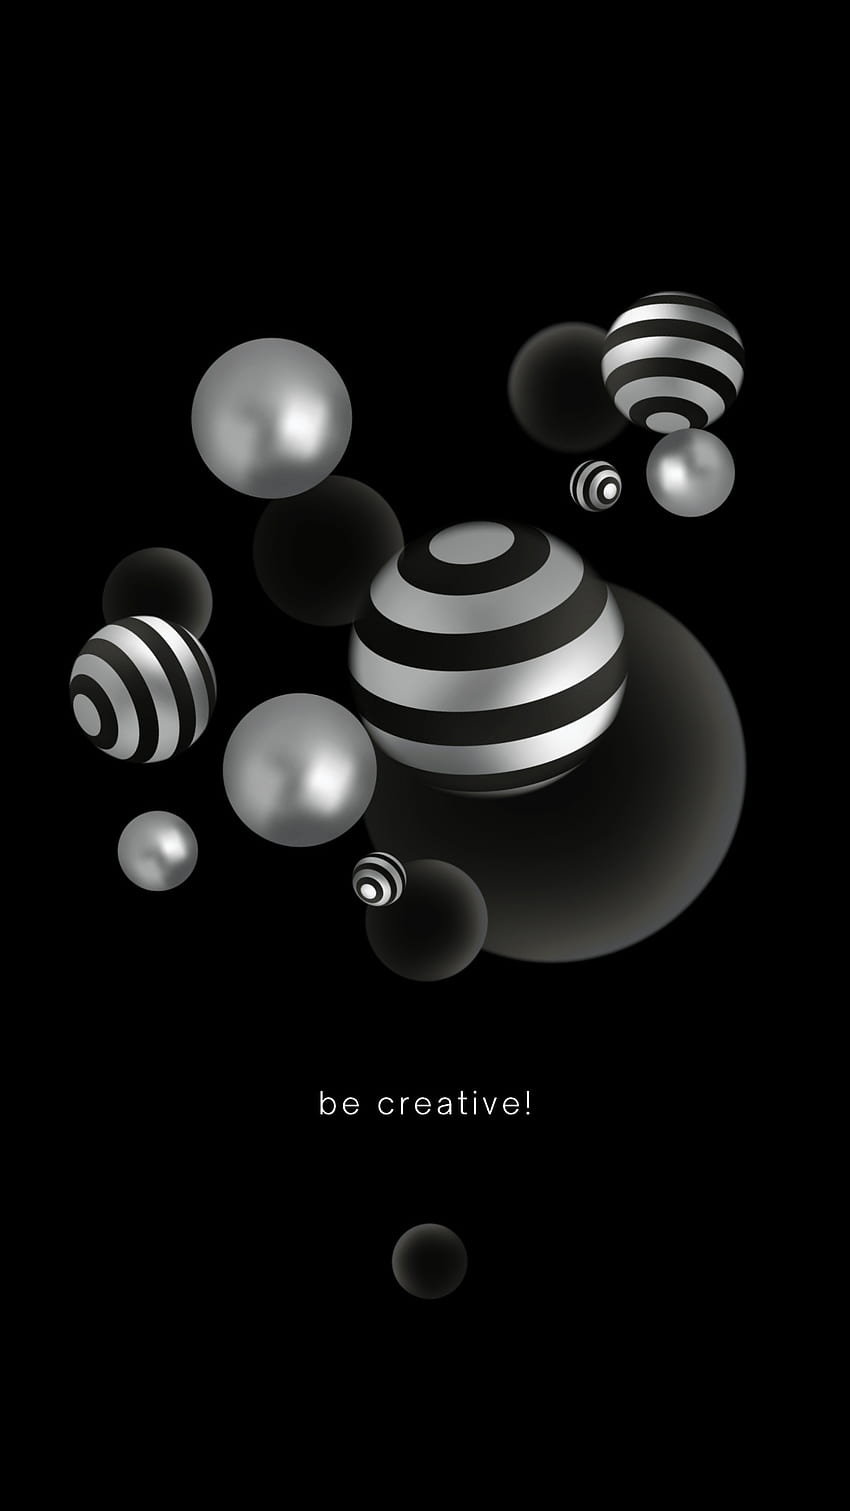 Sé creativo, arte, cita, redondo, android, ciencia, negro, círculos, refrán, iphone, esferas fondo de pantalla del teléfono